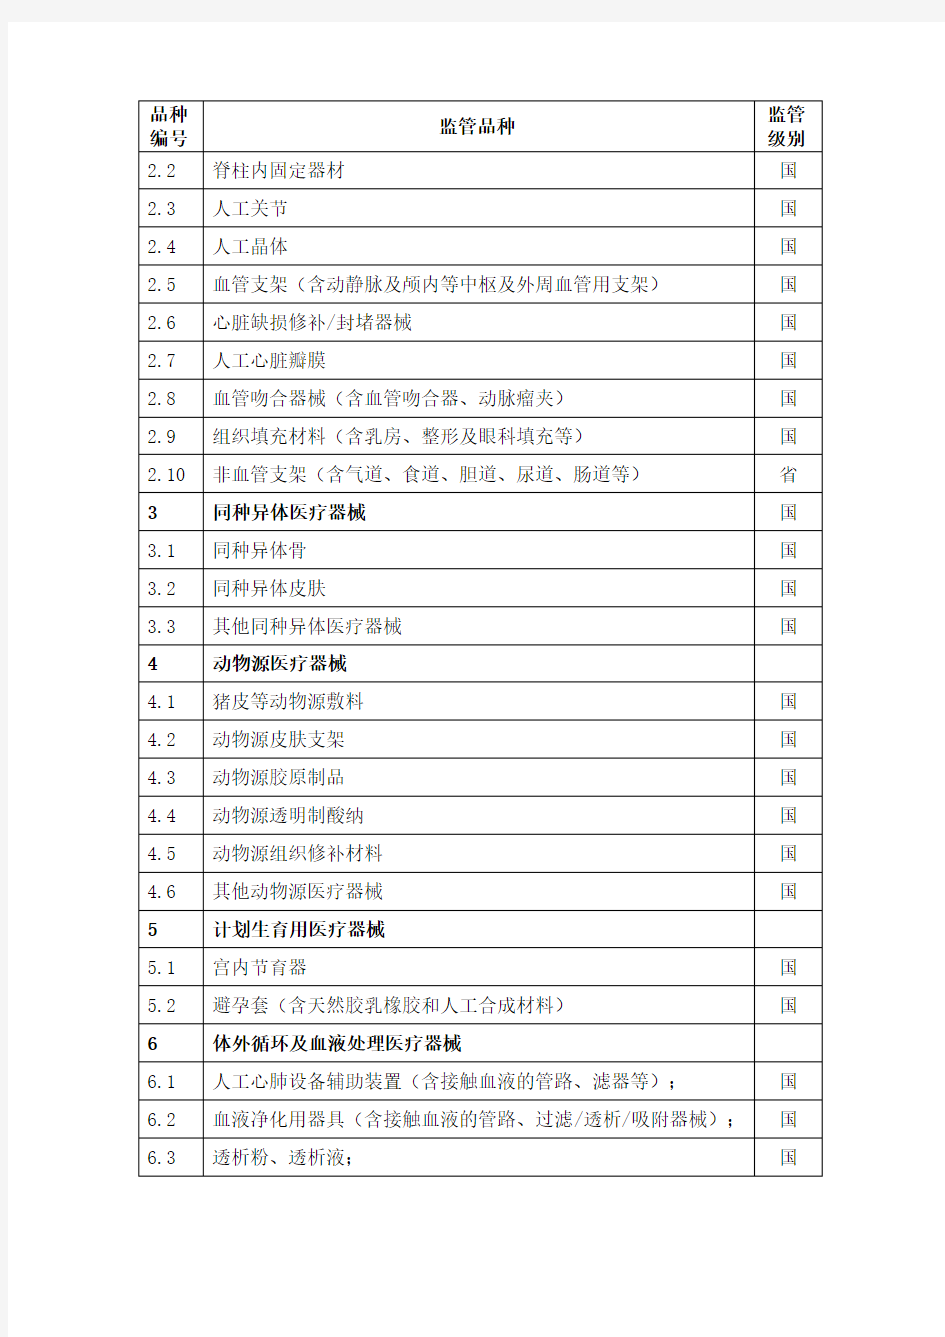 江苏省医疗器械生产环节重点监管医疗器械目录(2014年版)